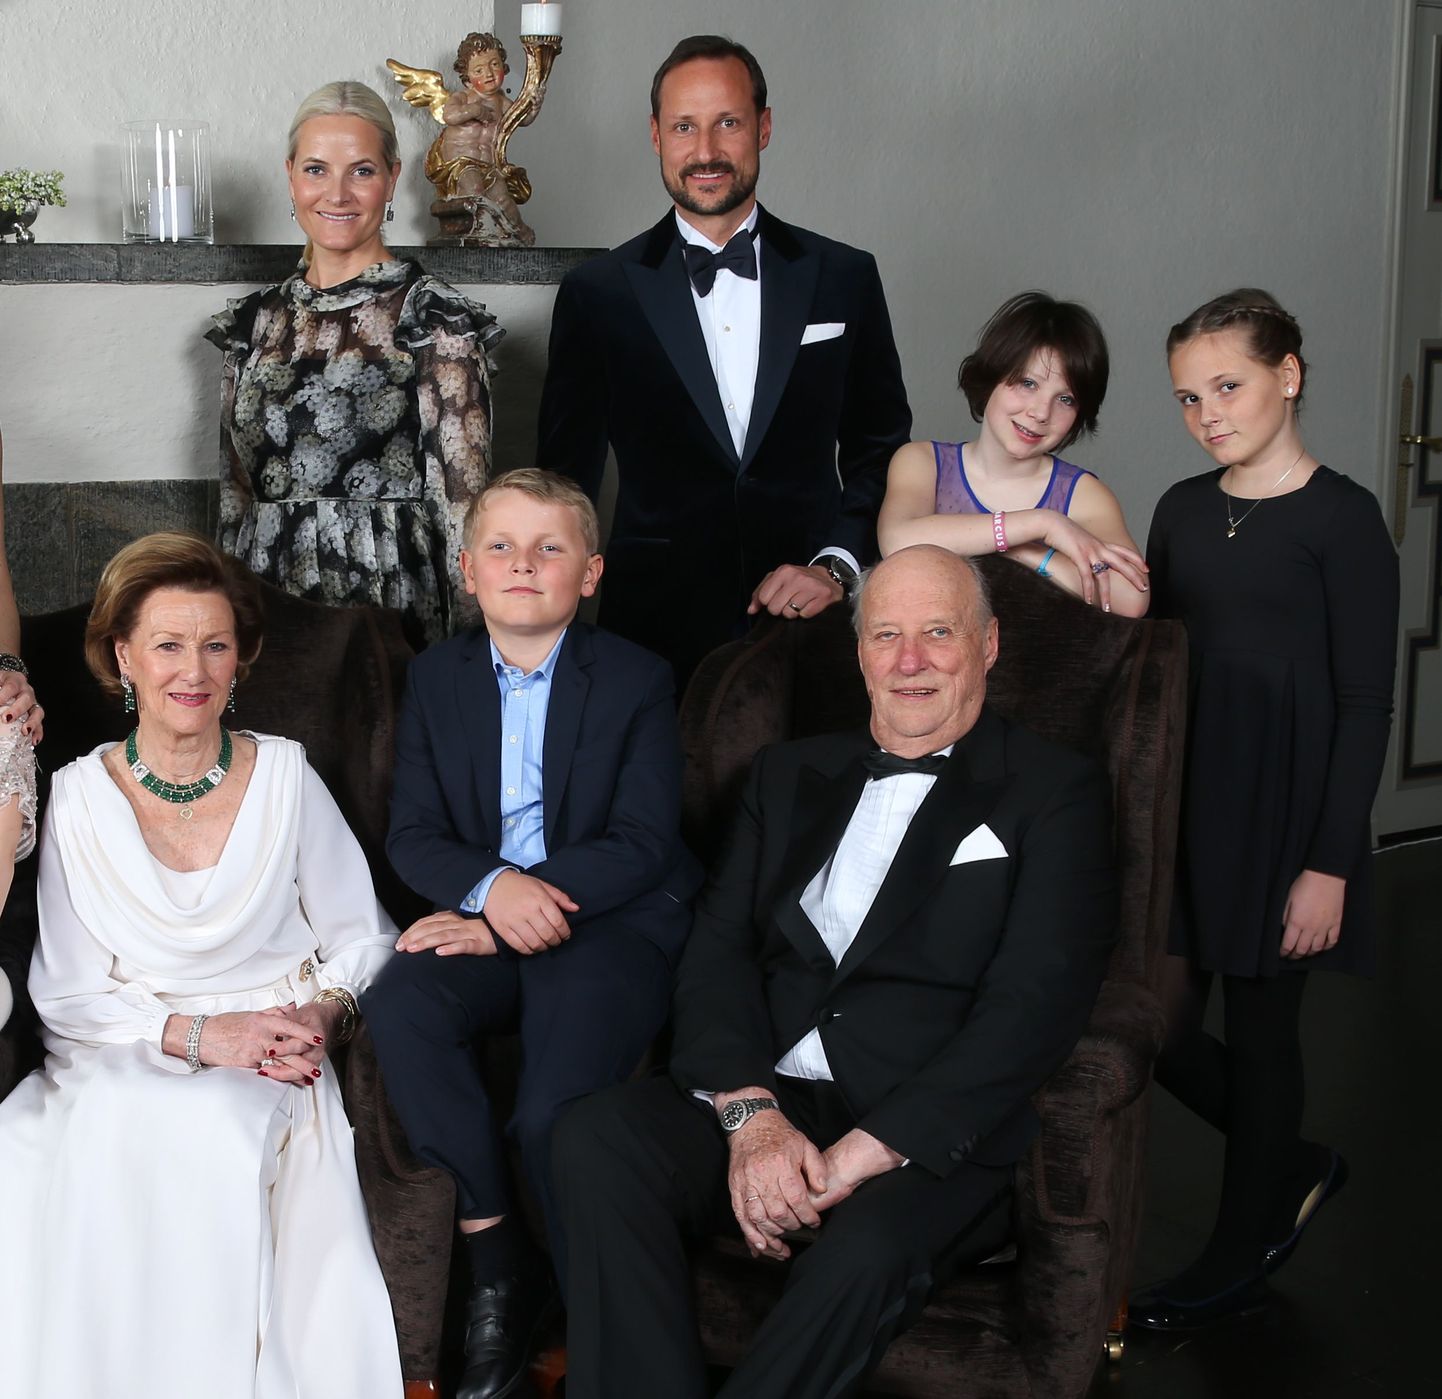 Norra kuninglik perekond: vasakult paremale esireas kuninganna Sonja, prints Sverre Magnus ja kuningas Harald. Tagareas seisavad kroonprintsess Mette Marit, kroonprints Haakon, Maud Angelica Behn ja printsess Ingrid Alexandra.